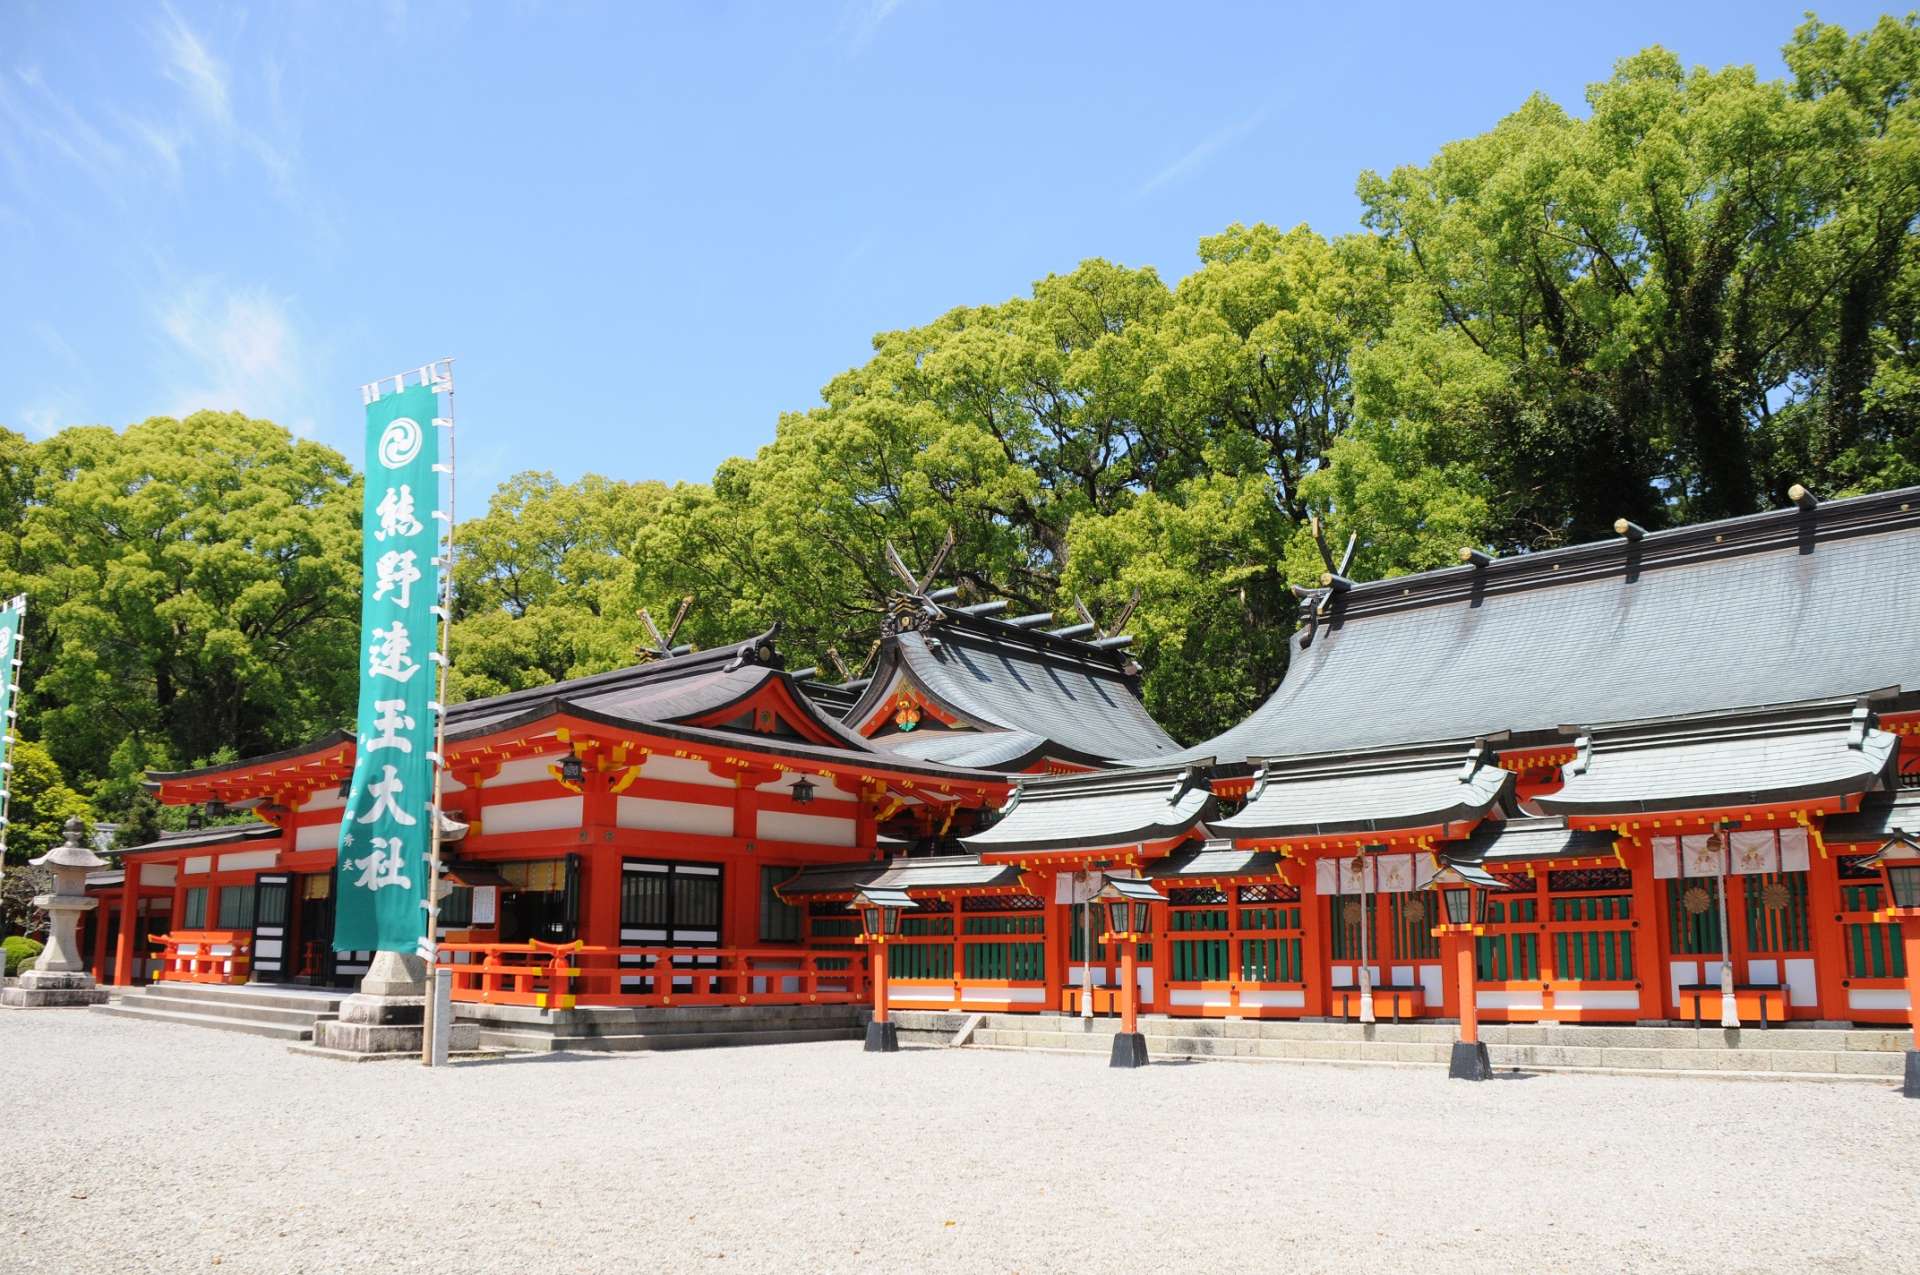 朱塗りの社殿が美しく神々しい熊野速玉大社の境内